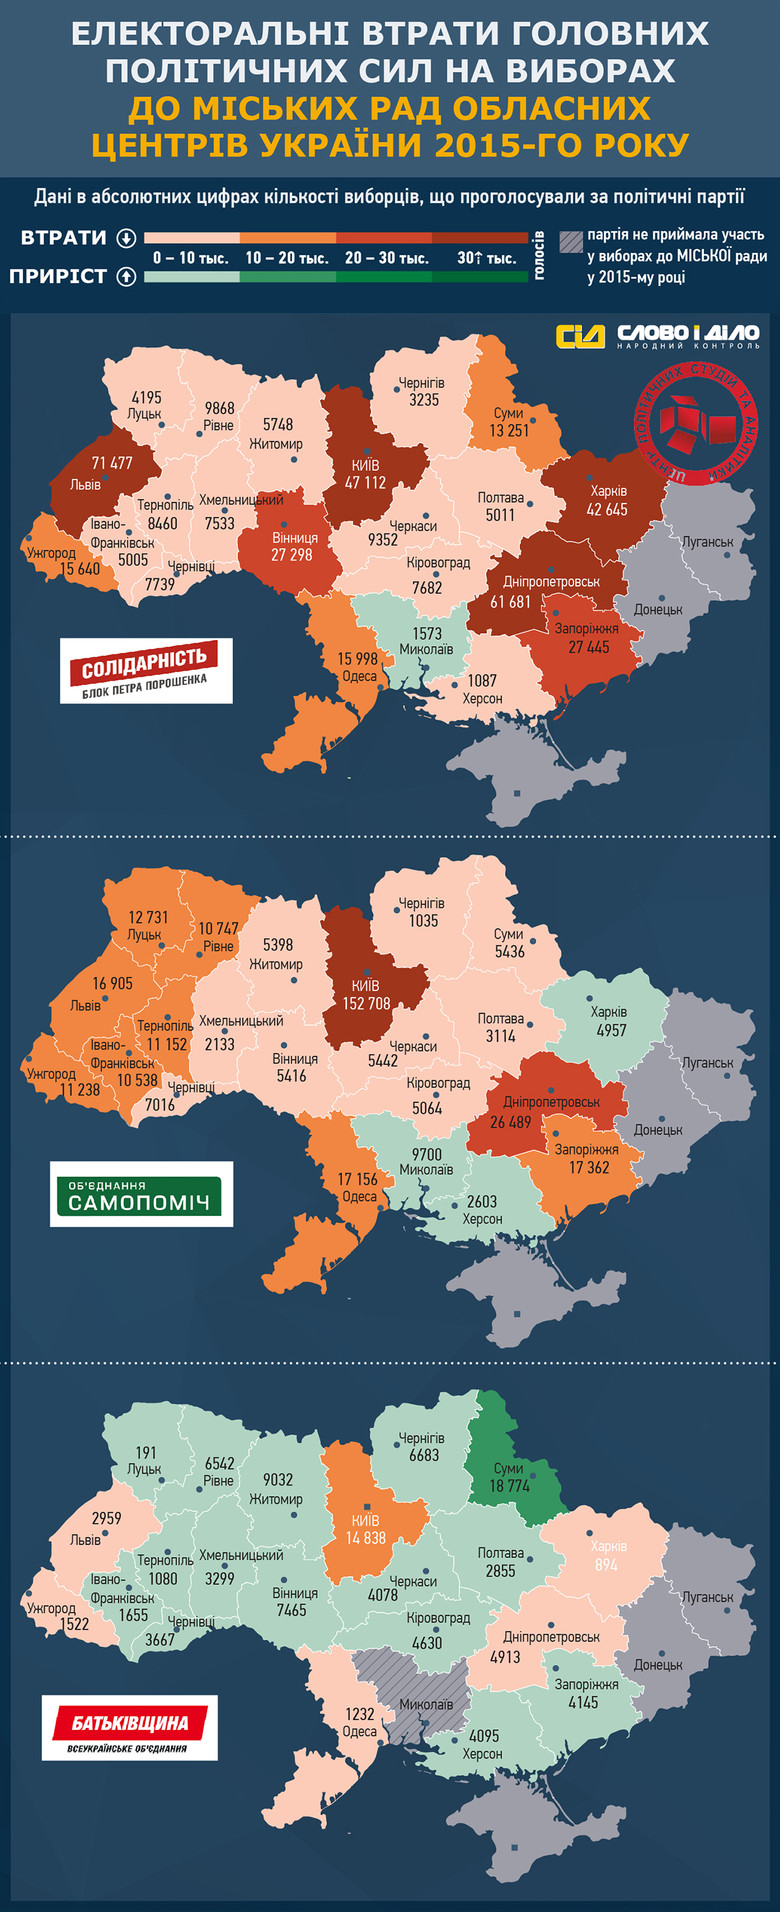 «Слово і Діло» спільно з Центром політичних студій та аналітики продовжує аналізувати результати місцевих виборів в України щодо кількості втрачених голосів партій в обласних центрах.